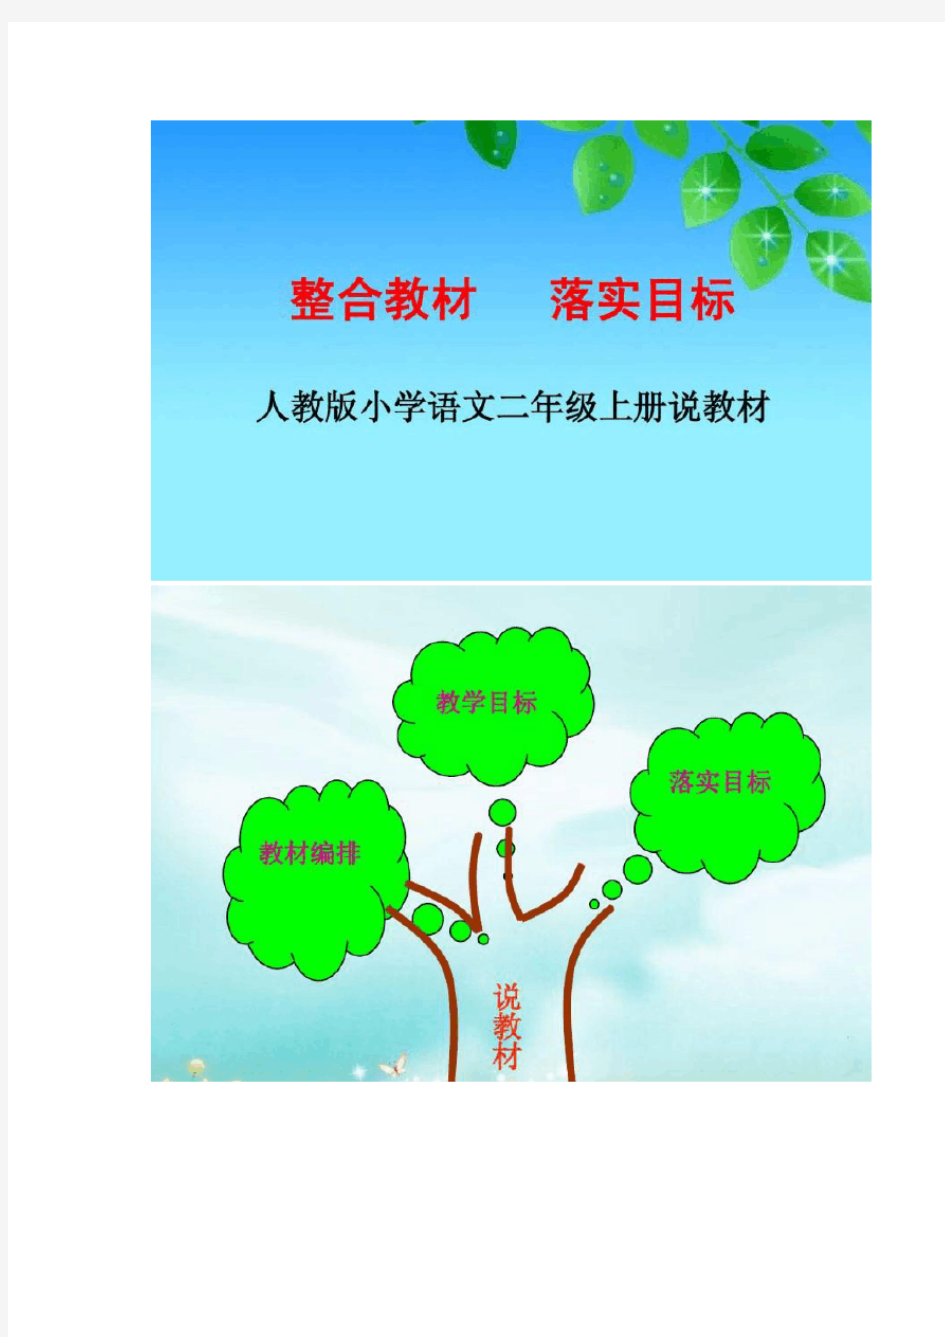 【二年级语文】二年级语文上册知识树整理,考试复习必备!